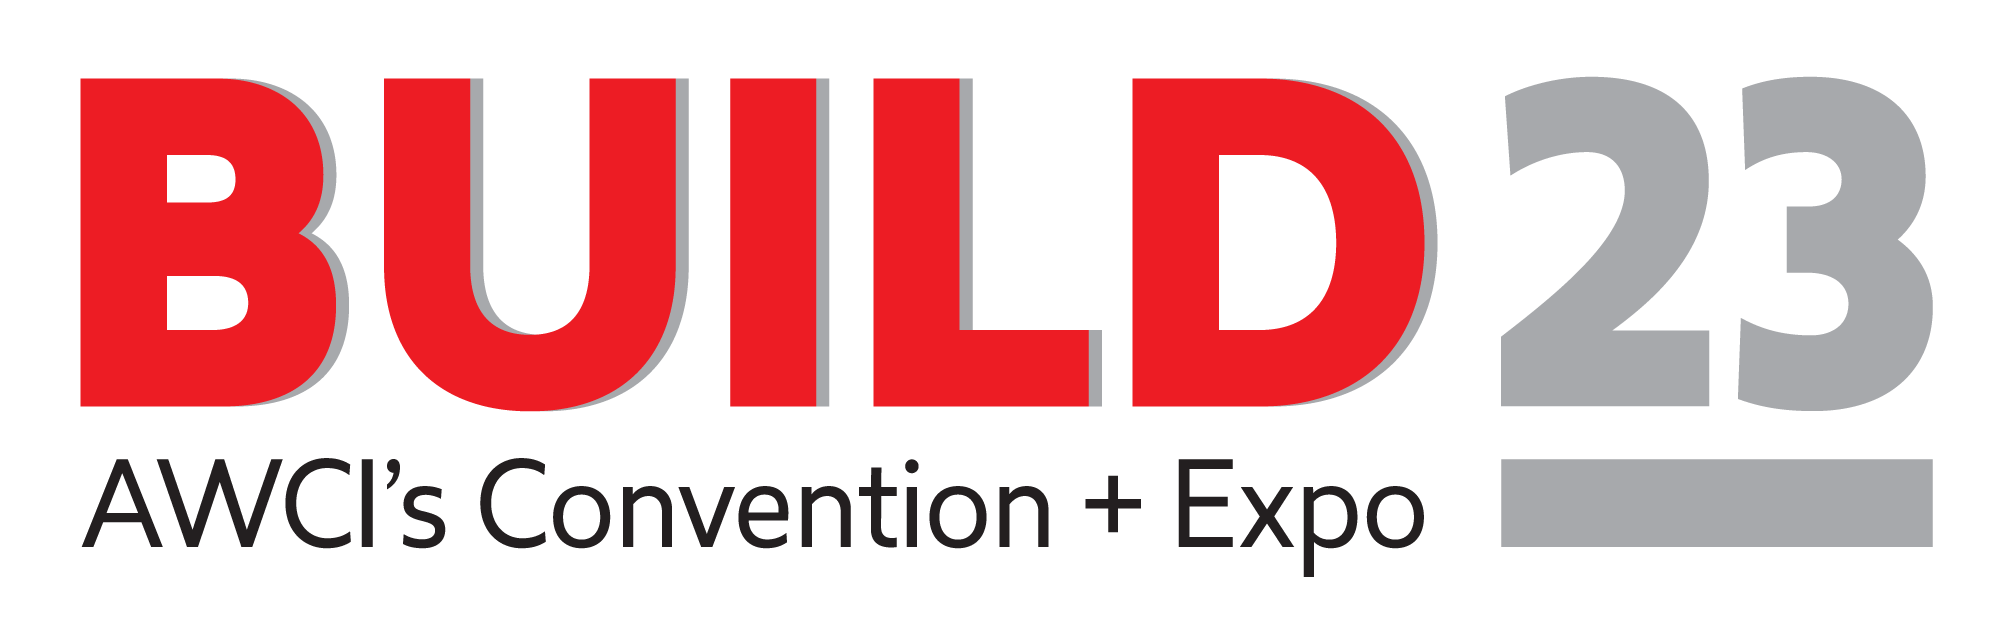 AWCI Convention + Expo Build23 logo